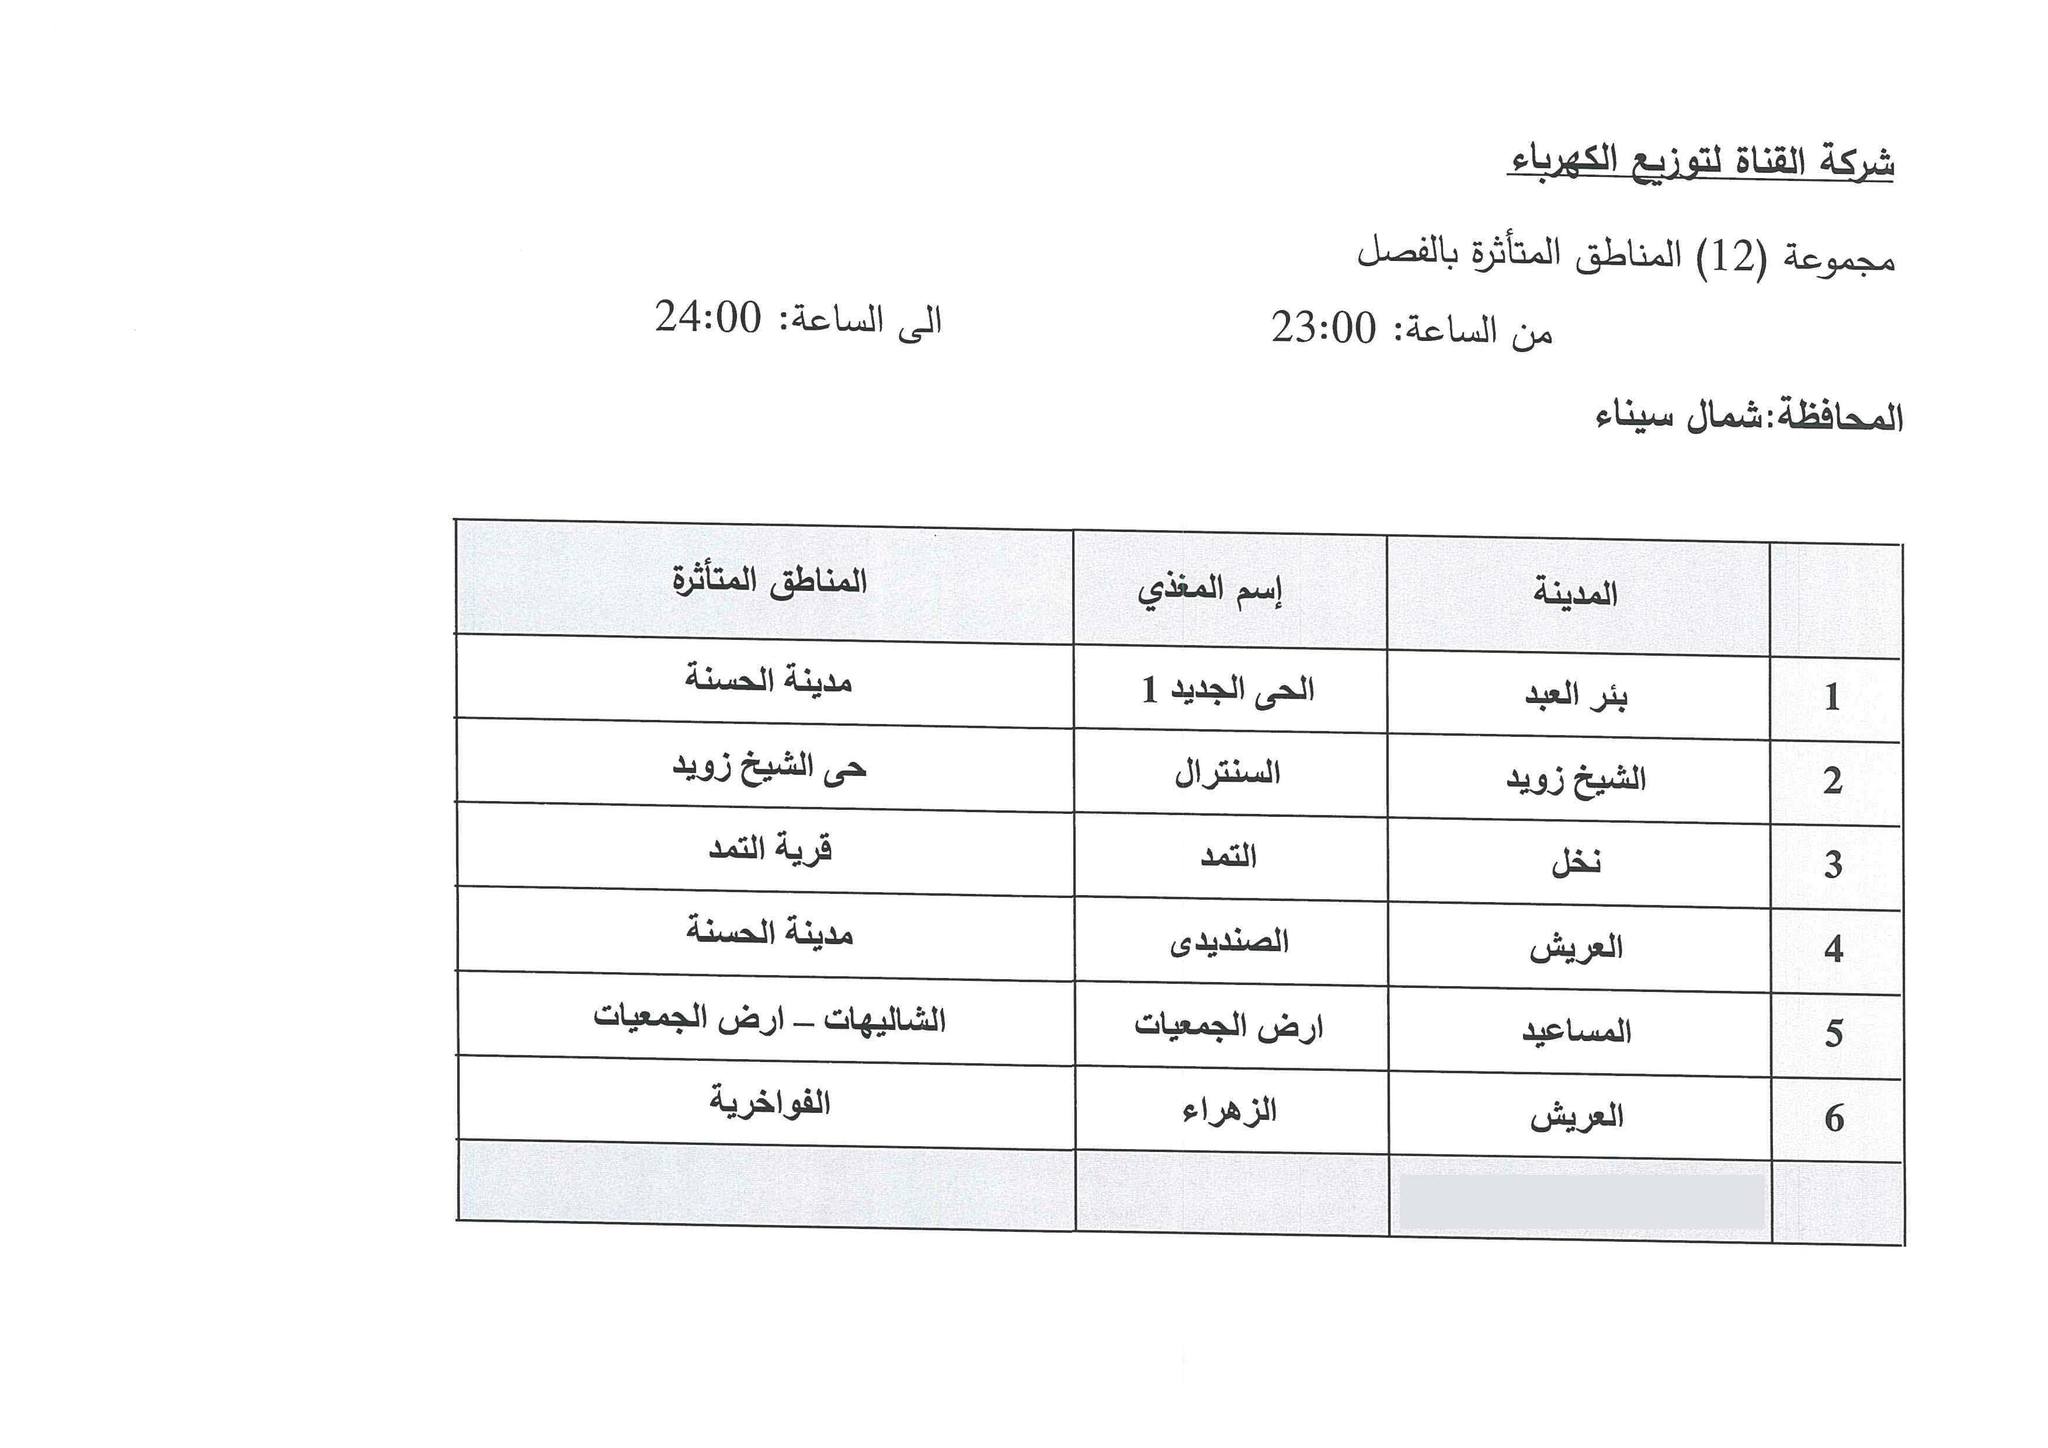 جدول مواعيد تخفيف الأحمال الكهربائية فى محافظة شمال سيناء (1)